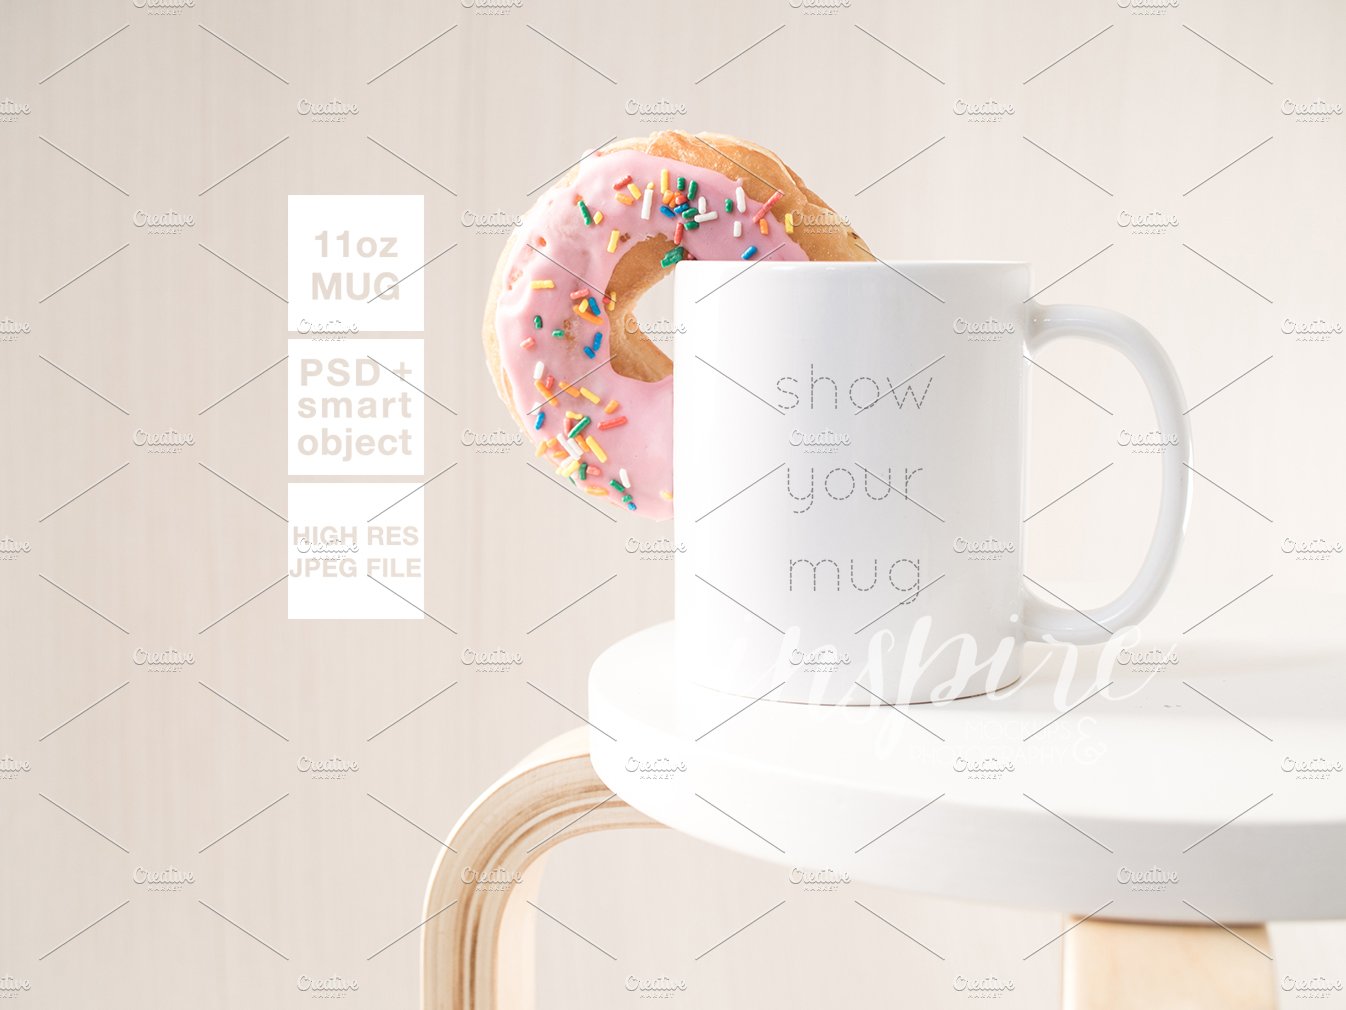 11oz Ceramic Mug Mockup + Donut PSD cover image.